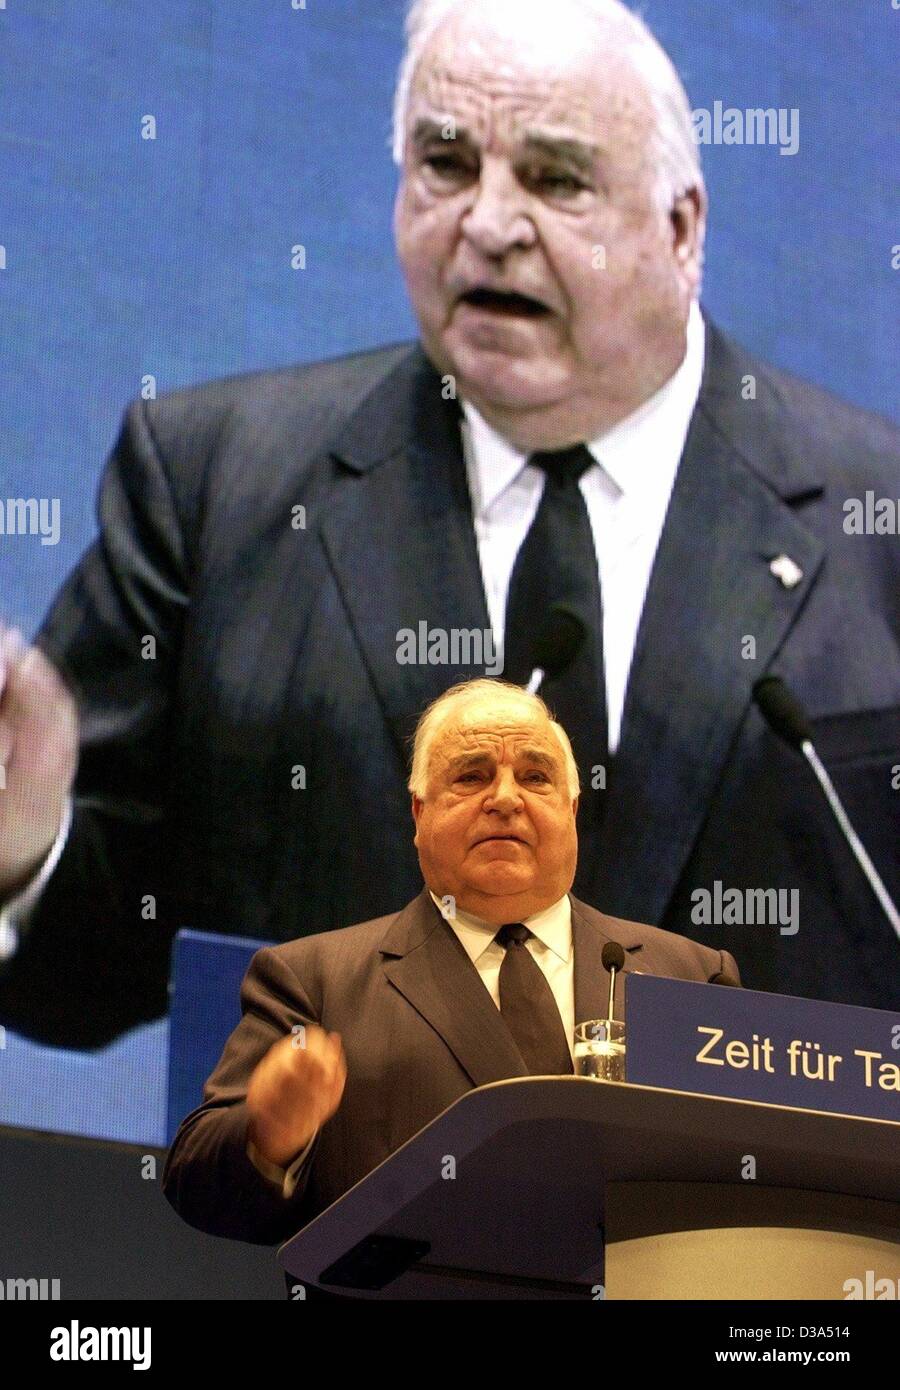 (Dpa) - Helmut Kohl, ehemaliger Bundeskanzler der Bundesrepublik Deutschland und ehemaliger Vorsitzender der christlich demokratischen Partei CDU, spricht bei einem CDU-Parteitag in Frankfurt am Main, 17. Juni 2002. Er kündigte an, seine Partei im Wahlkampf für die Wahlen im September unterstützen. Kohl hatte aus Politi zurückgezogen. Stockfoto